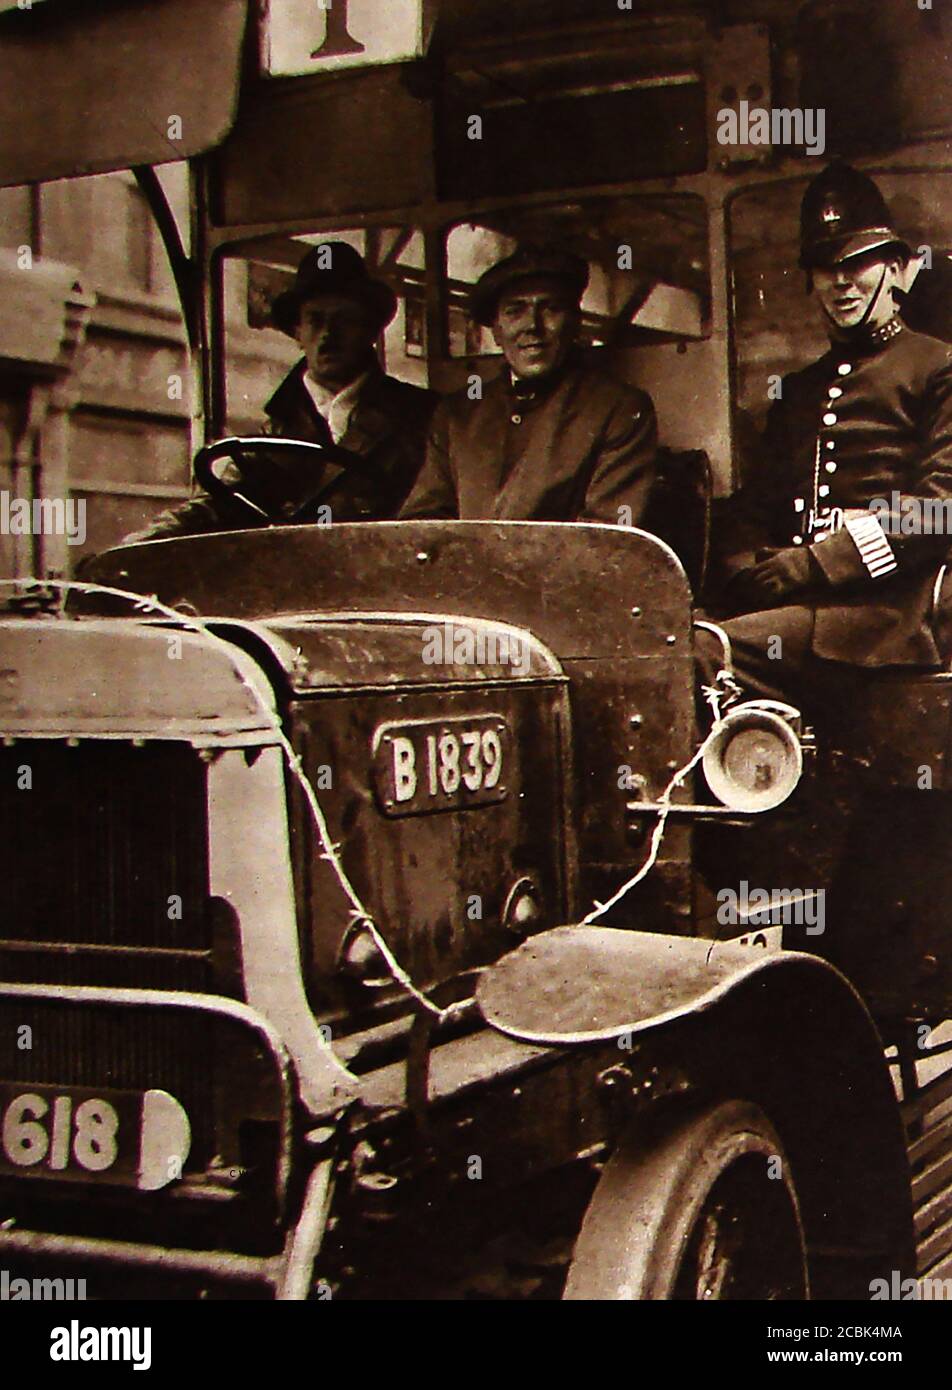 Arrêt général / grève en faveur des mineurs du Royaume-Uni - mai 1926. Cette ancienne photo montre un Bobby britannique (policier) qui garde le personnel d'un bus de grève brisant . La grève a duré neuf jours, du 4 au 12 mai 1926, ayant été convoquée par le Conseil général du Congrès des syndicats des métiers (TUC) dans une tentative infructueuse de forcer le gouvernement britannique à améliorer les conditions de travail et de salaire des mineurs de charbon . Banque D'Images